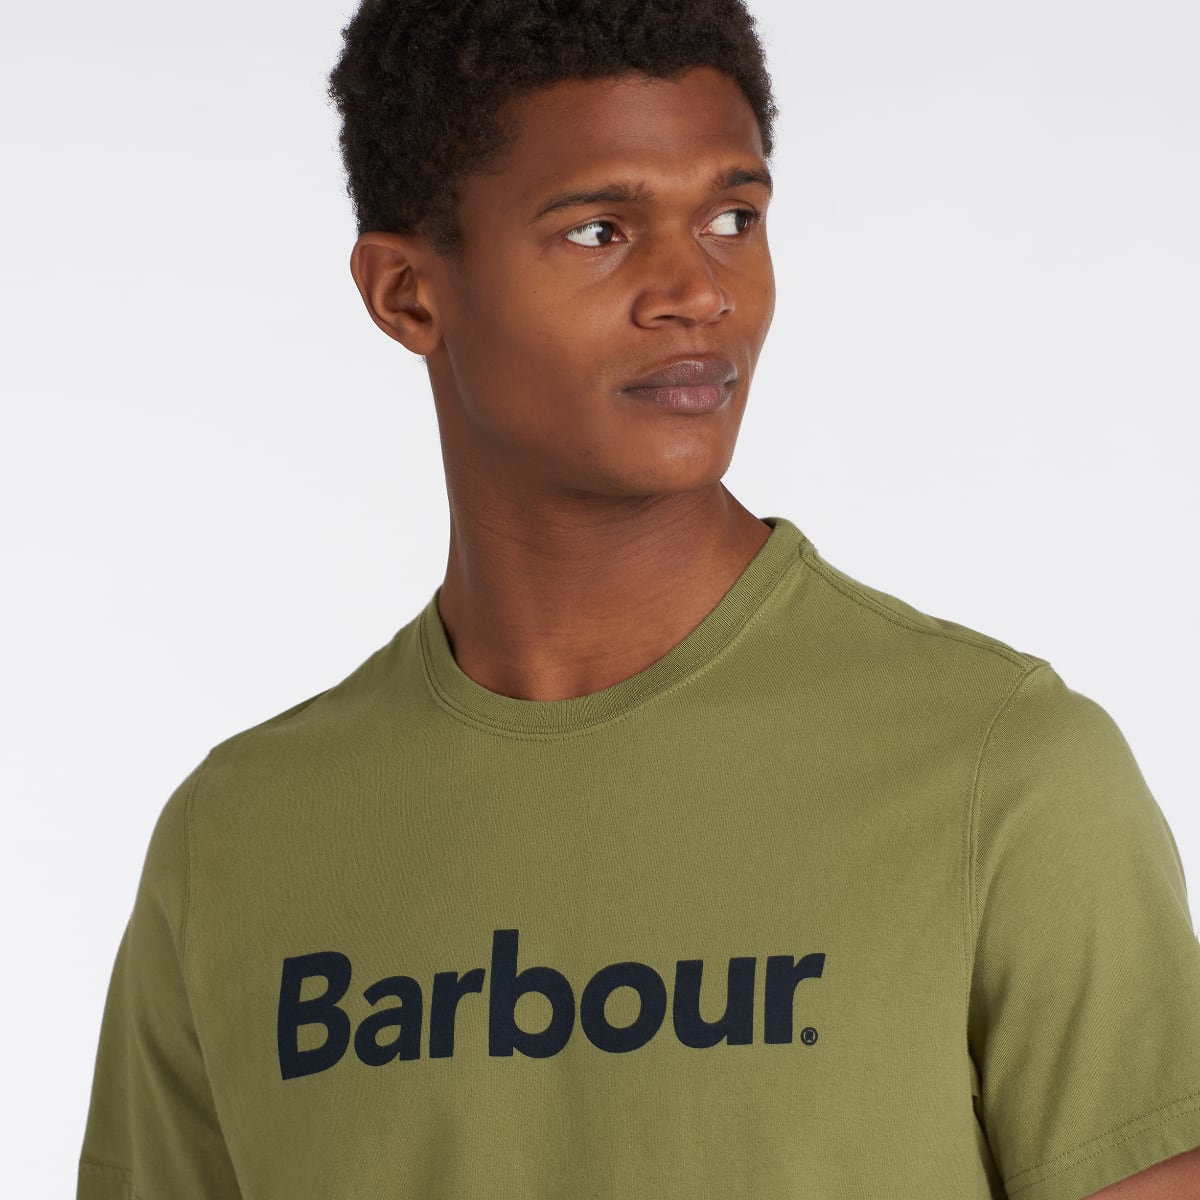 Barbour Men's Logo T-Shirt | Burnt Olive